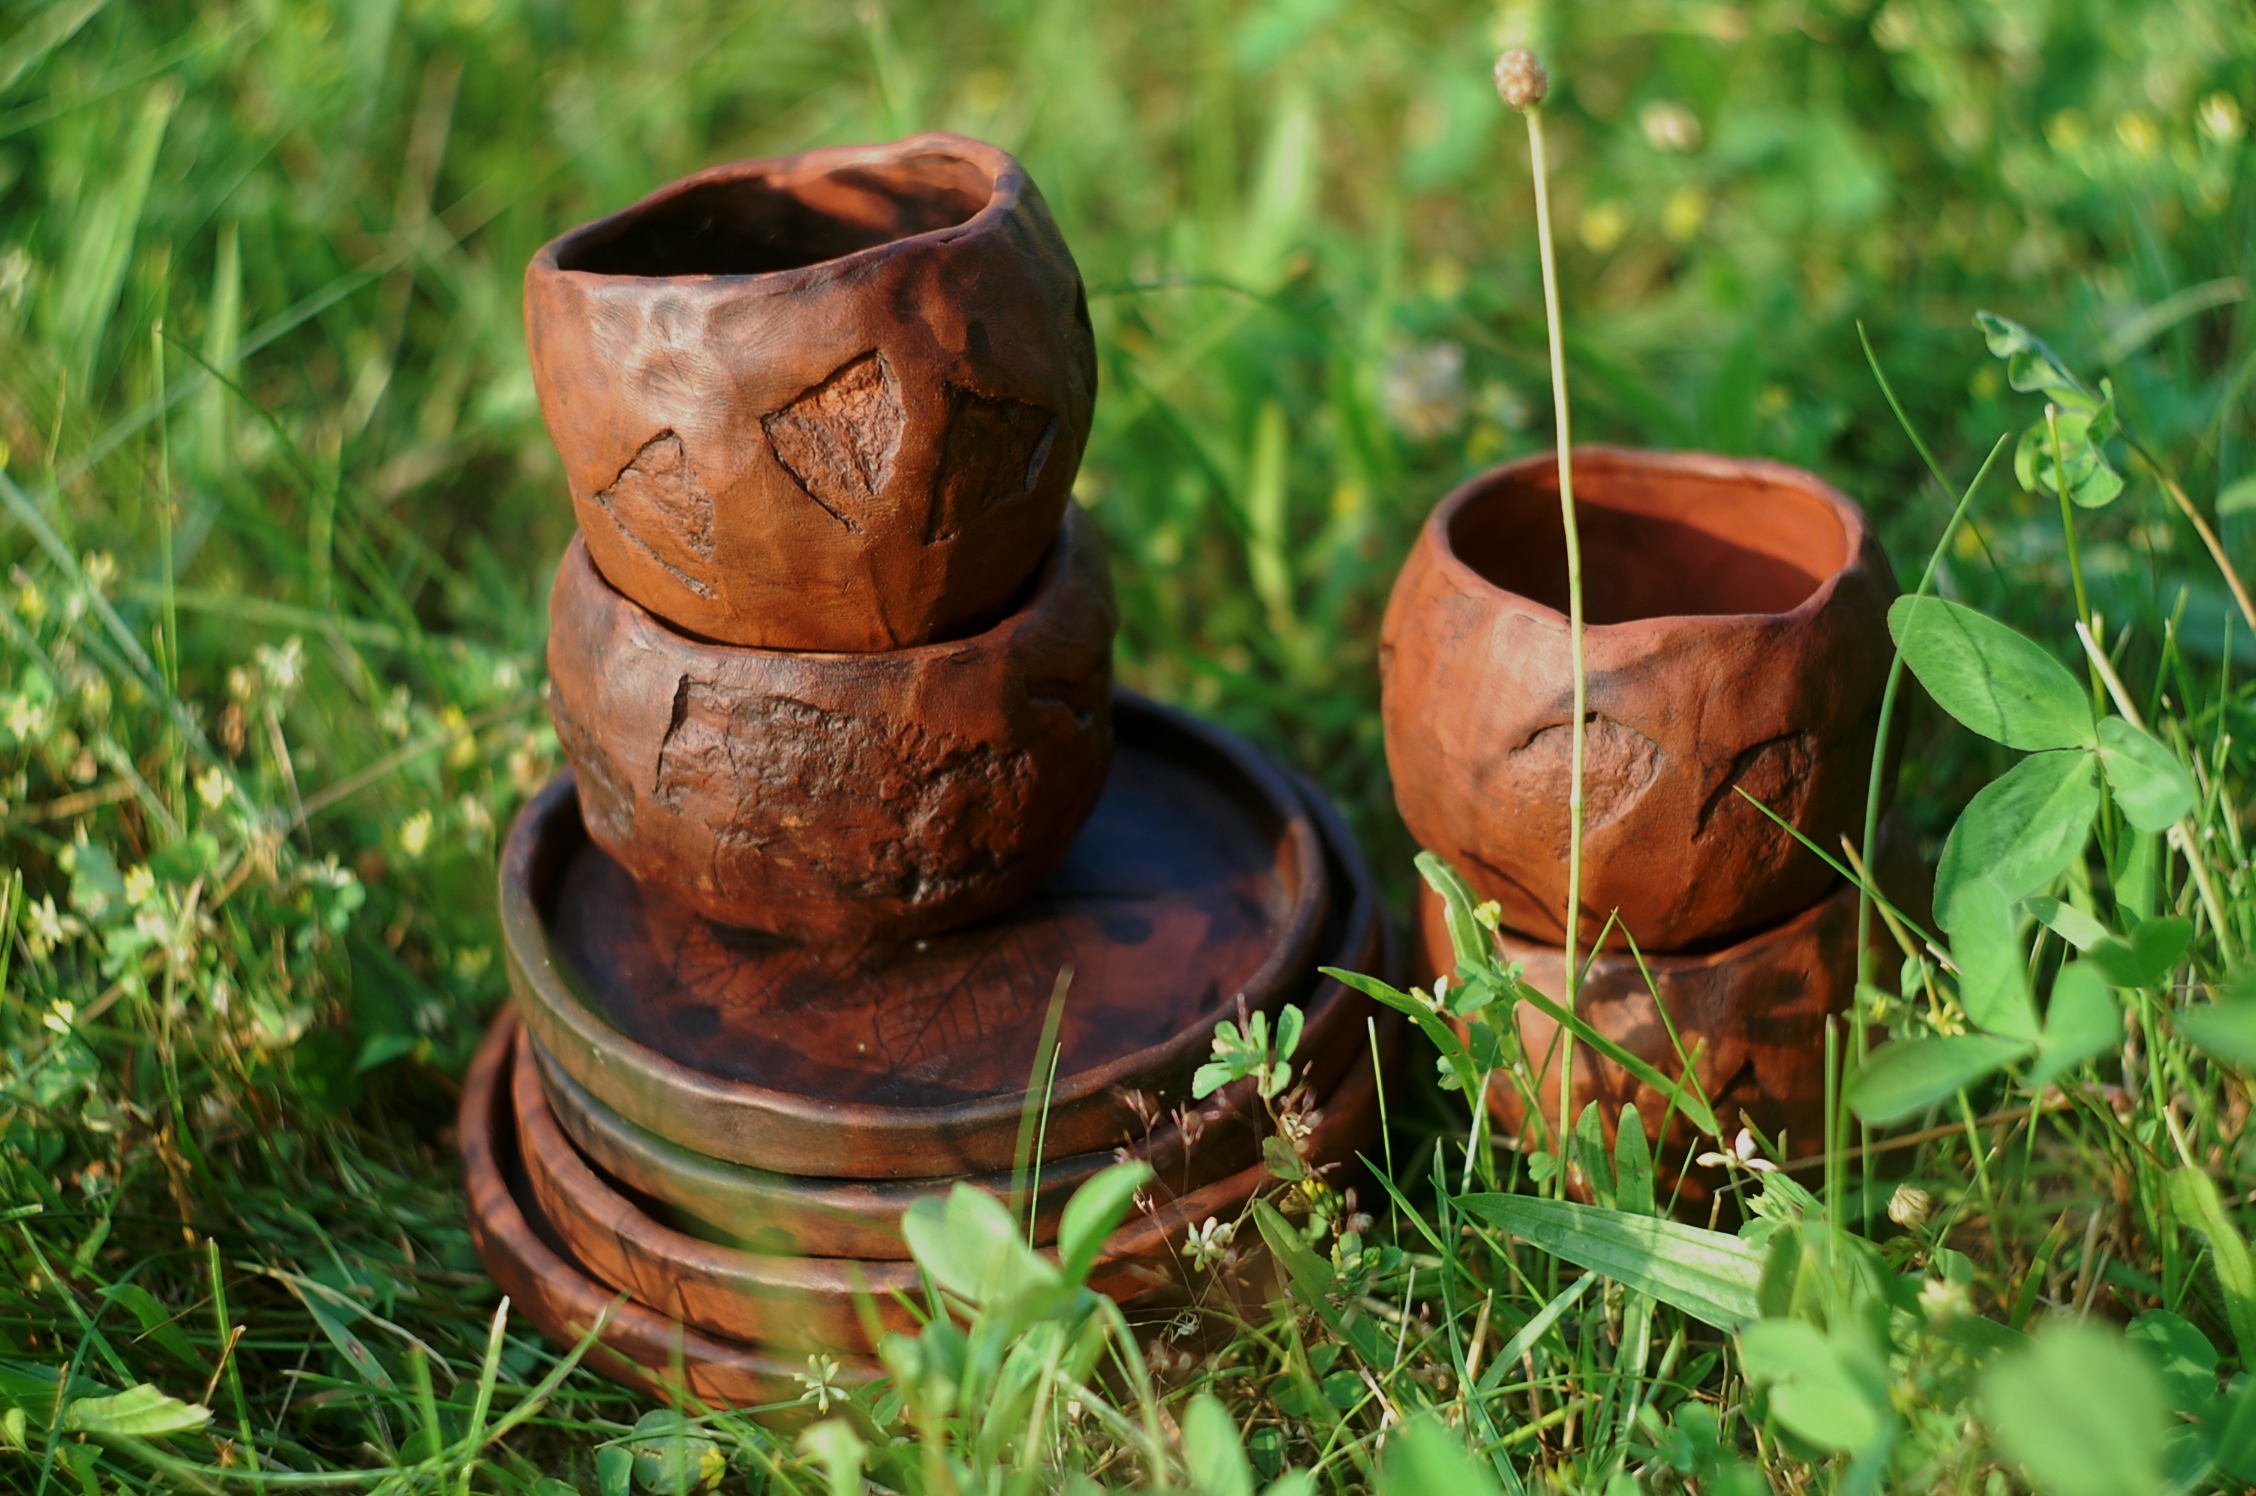 Stones pottery clay mug